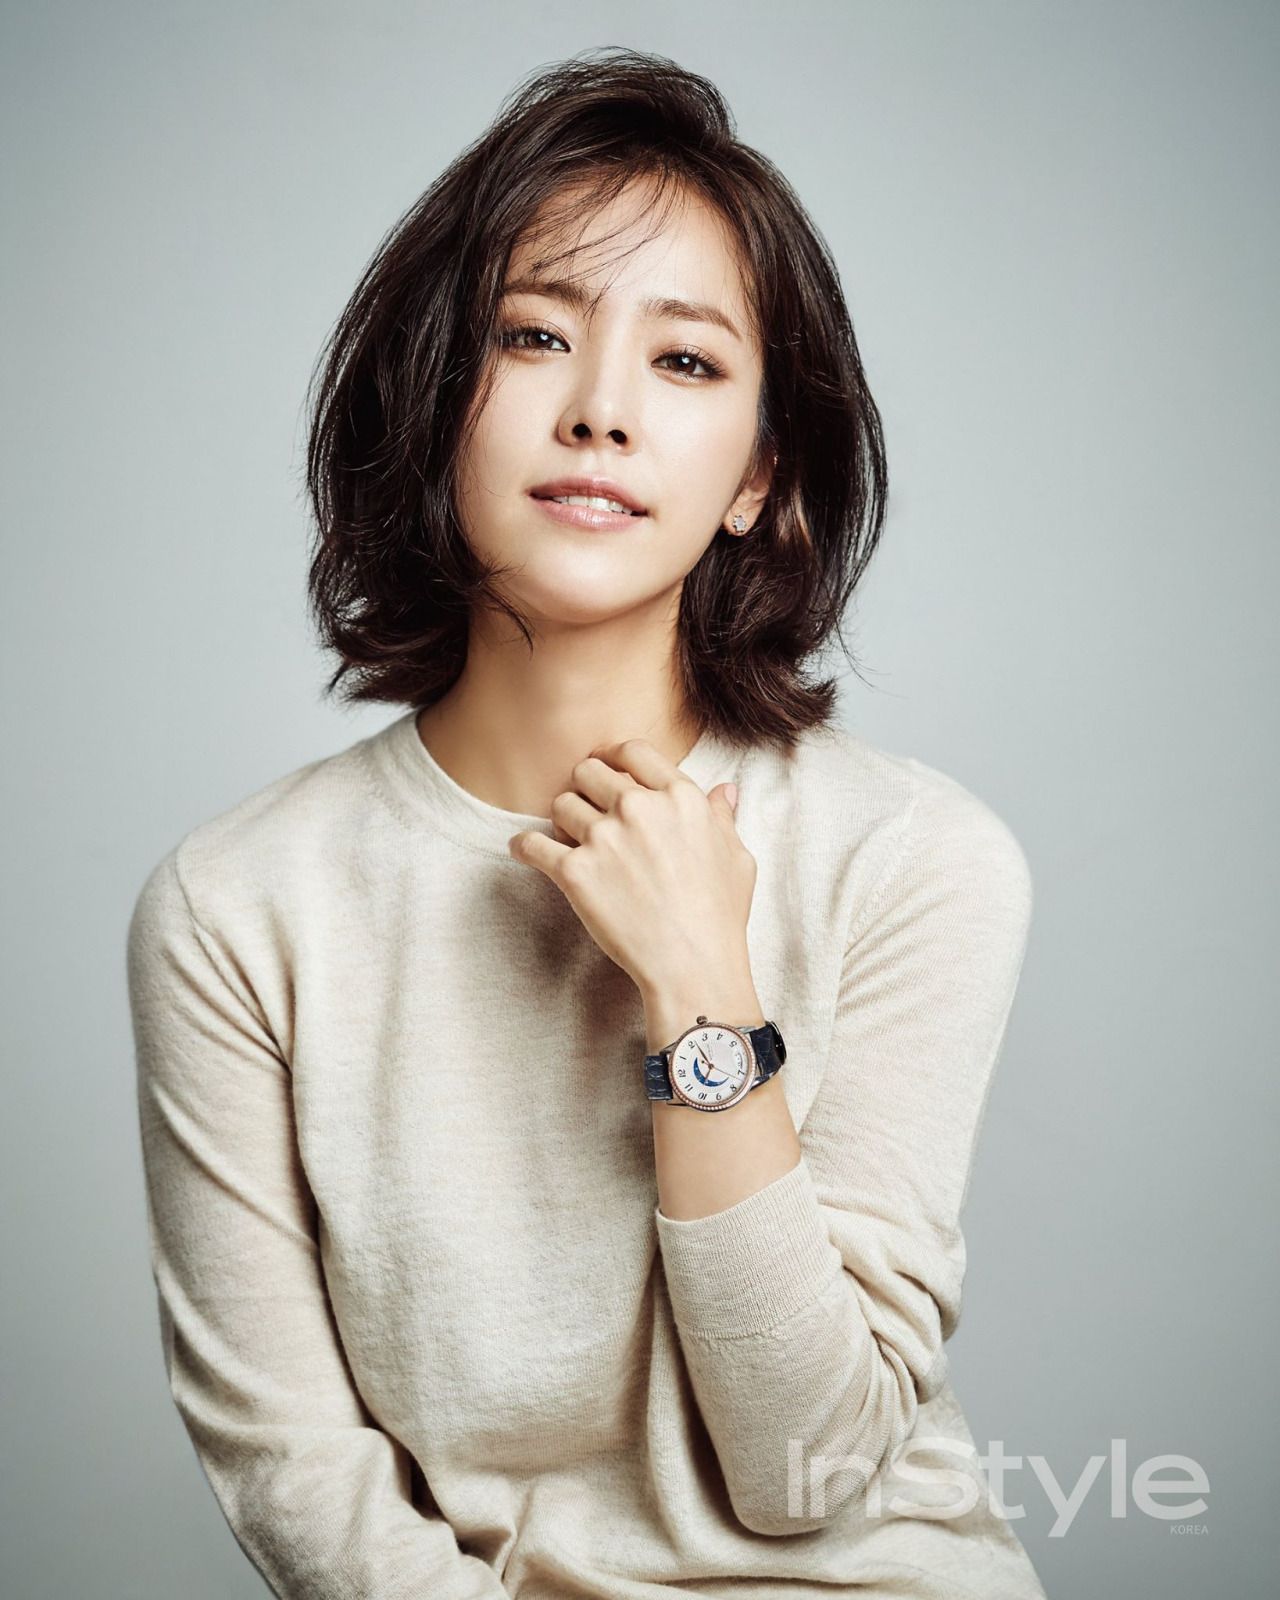 Top 10 mỹ nhân Hàn Quốc thế kỷ 21: Bộ ba nữ thần "Tae - Hye - Ji" đều có mặt nhưng đỉnh cao nhất phải là người đẹp huyền thoại 49 tuổi này  - Ảnh 9.